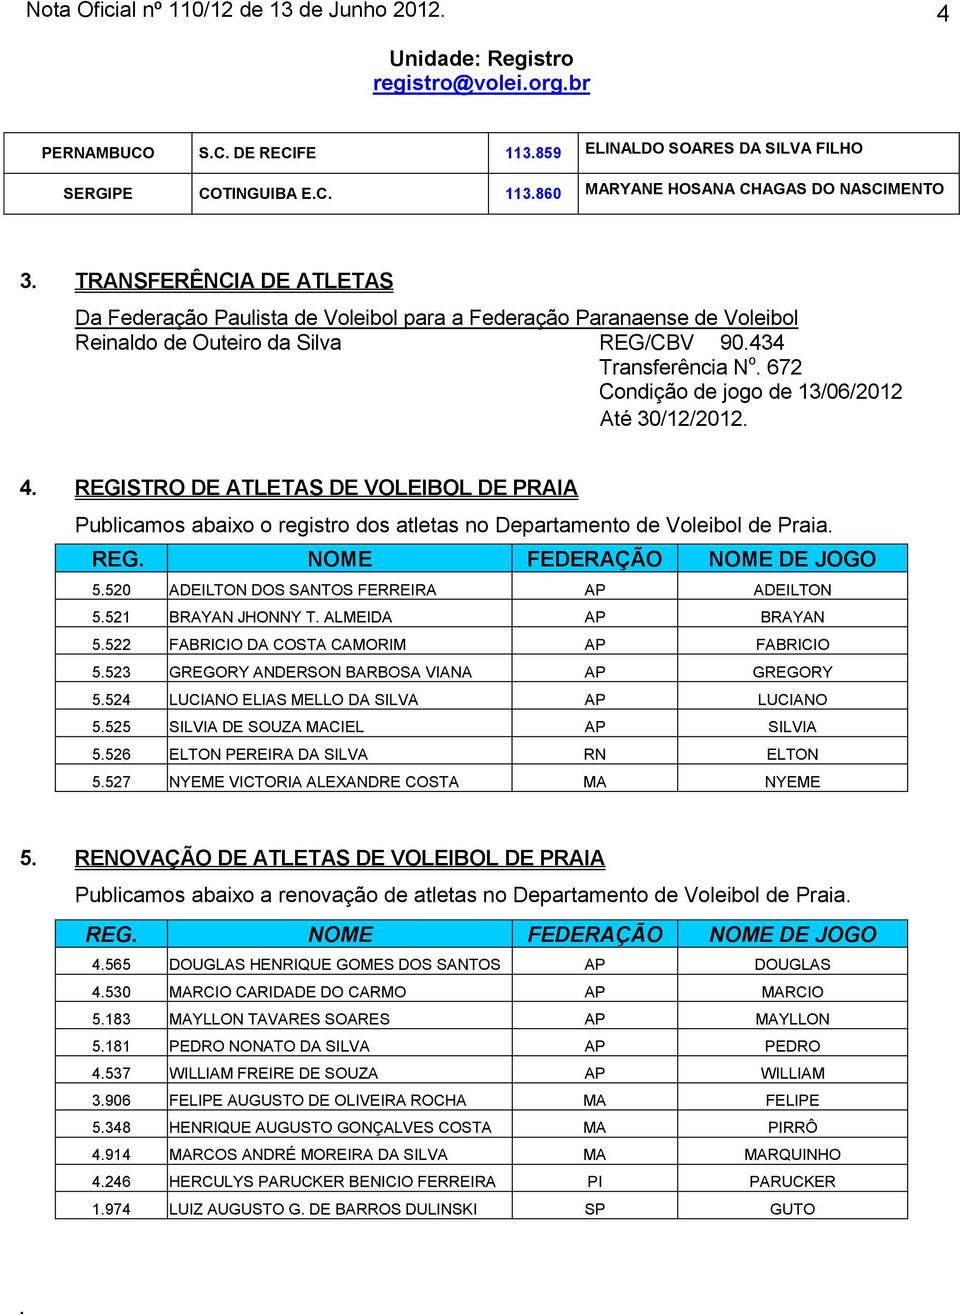 672 Condição de jogo de 13/06/2012 Até 30/12/2012. 4. REGISTRO DE ATLETAS DE VOLEIBOL DE PRAIA Publicamos abaixo o registro dos atletas no Departamento de Voleibol de Praia. REG. NOME FEDERAÇÃO NOME DE JOGO 5.